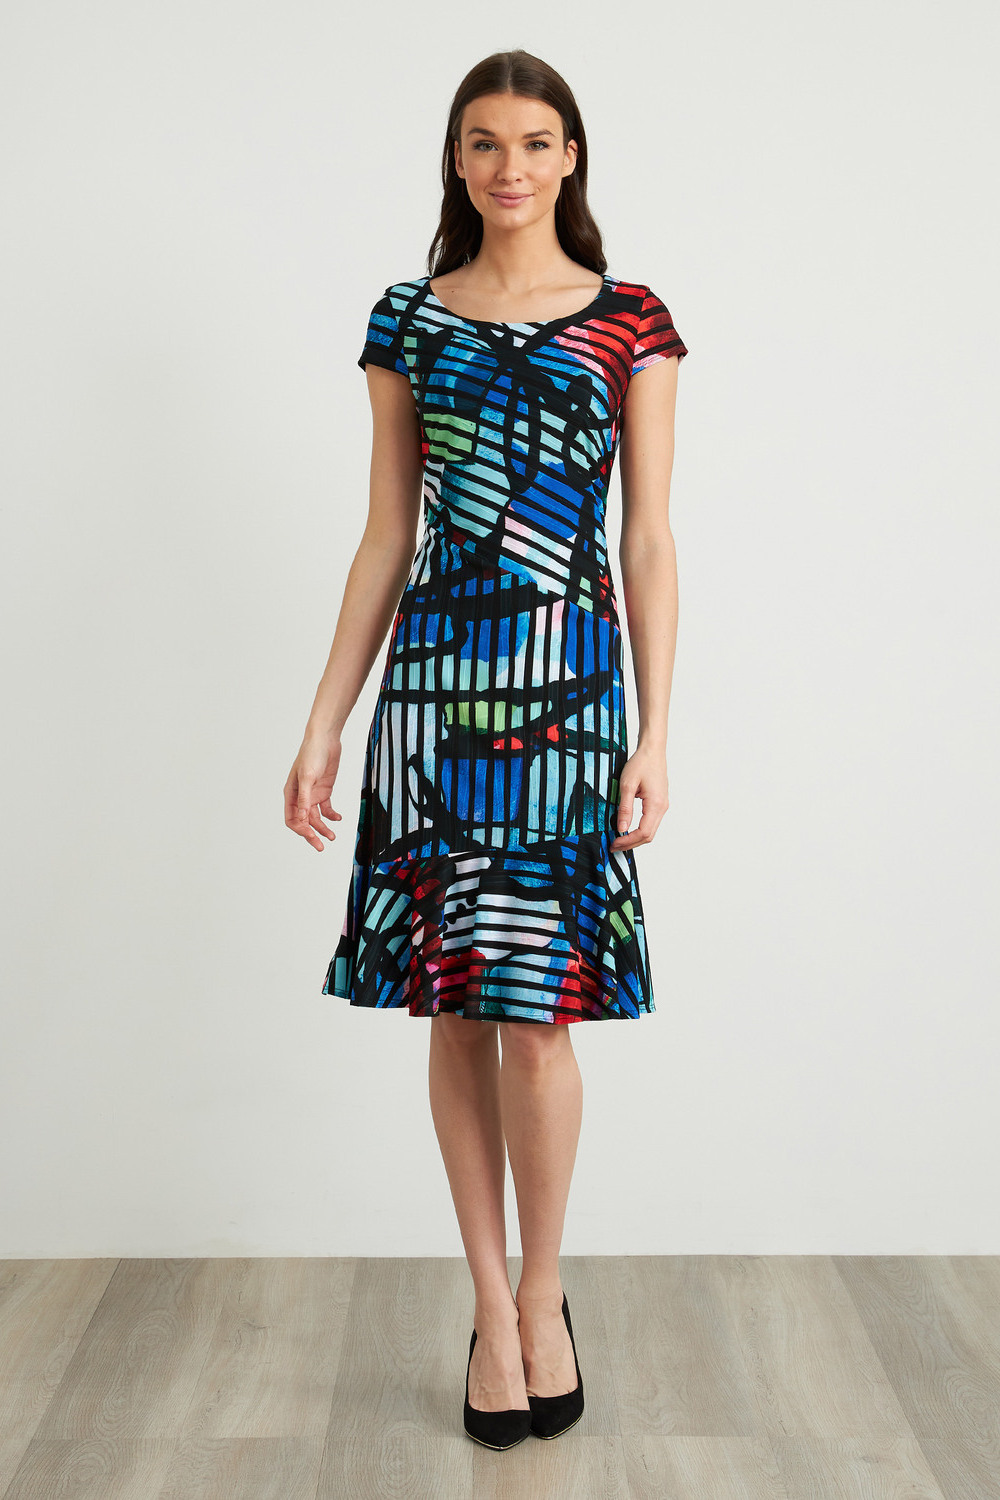 Joseph Ribkoff Multi-Colour Striped Dress Style 211009. Black/multi